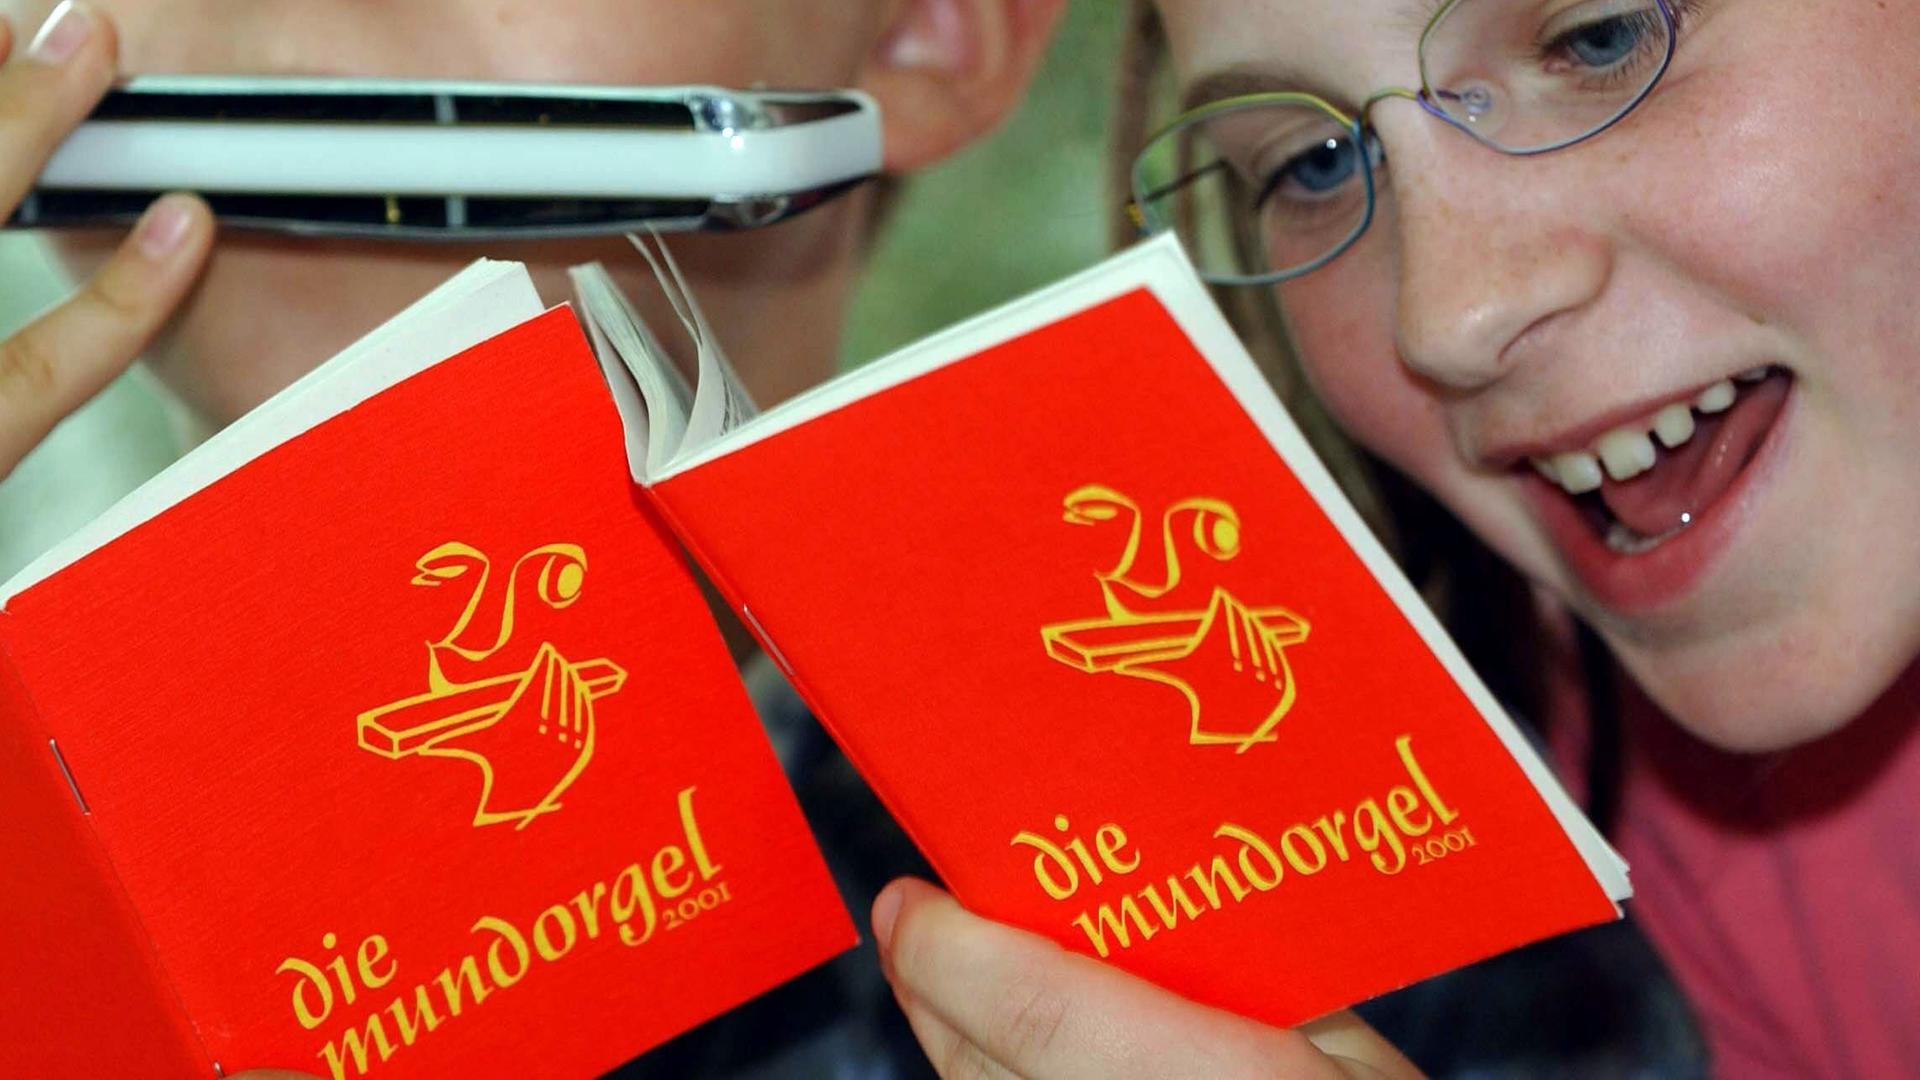 Ein Mädchen singt und ein Junge spielt mit der Mundharmonika Lieder aus der "Mundorgel".